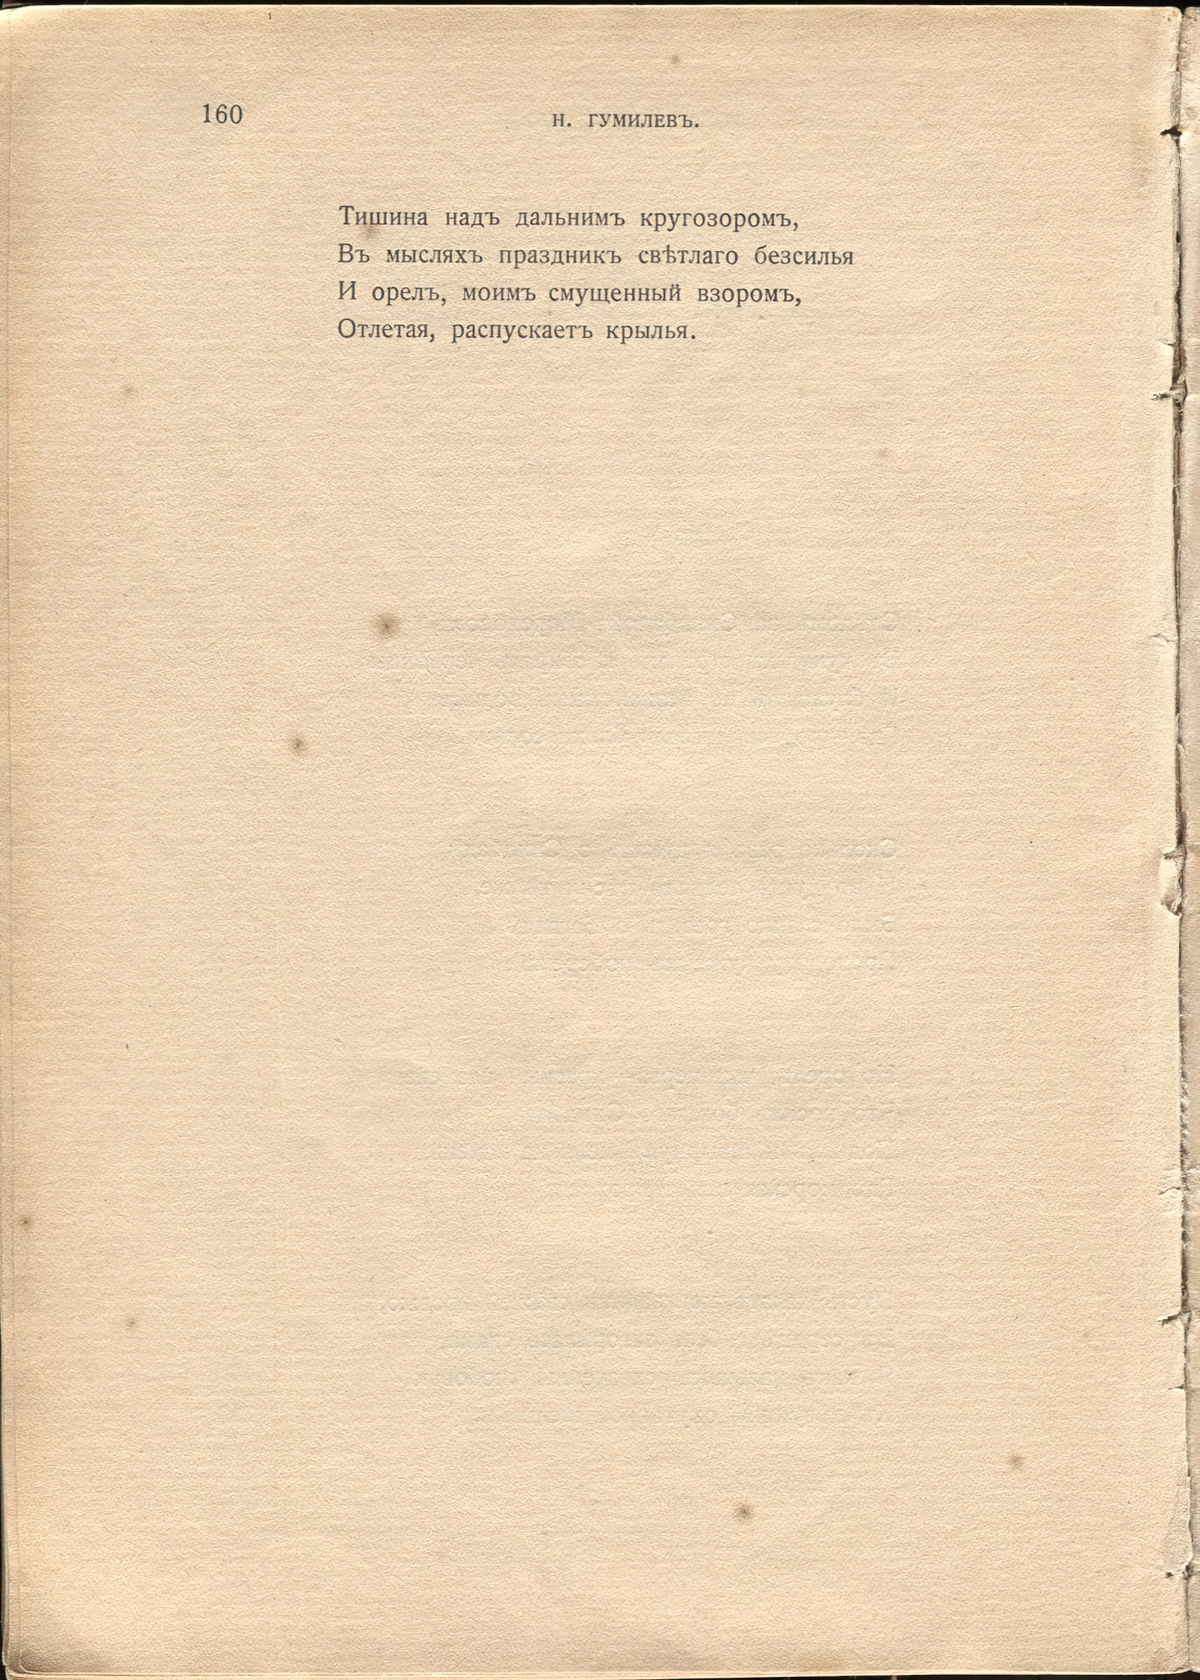 Жемчуга (1910). «Следом за Синдбадом-Мореходом...». Страница 160